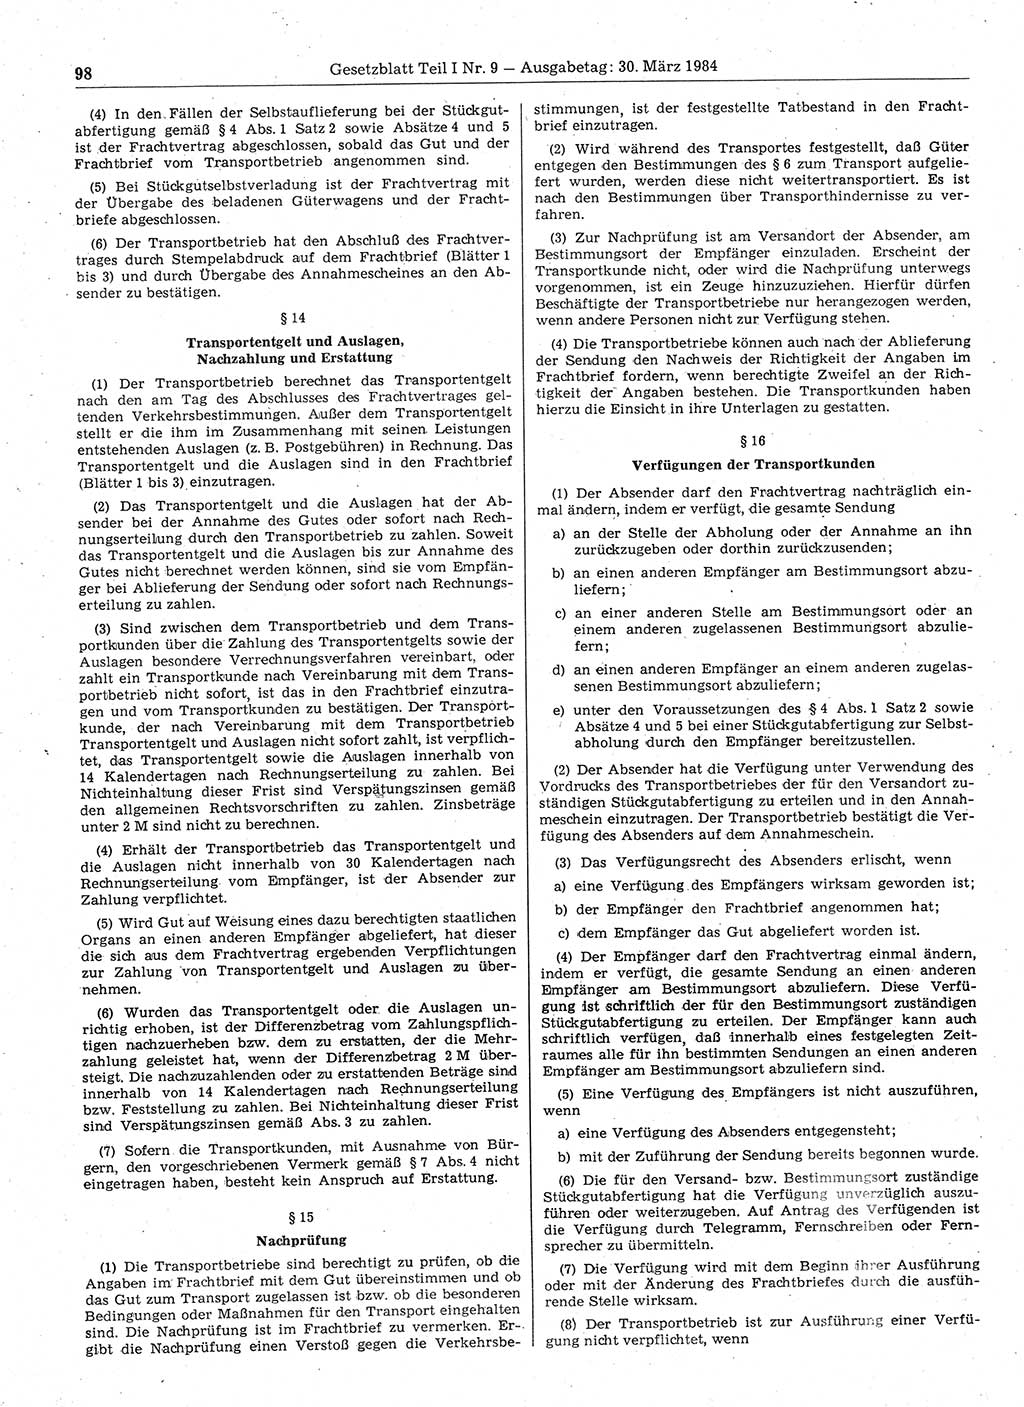 Gesetzblatt (GBl.) der Deutschen Demokratischen Republik (DDR) Teil Ⅰ 1984, Seite 98 (GBl. DDR Ⅰ 1984, S. 98)